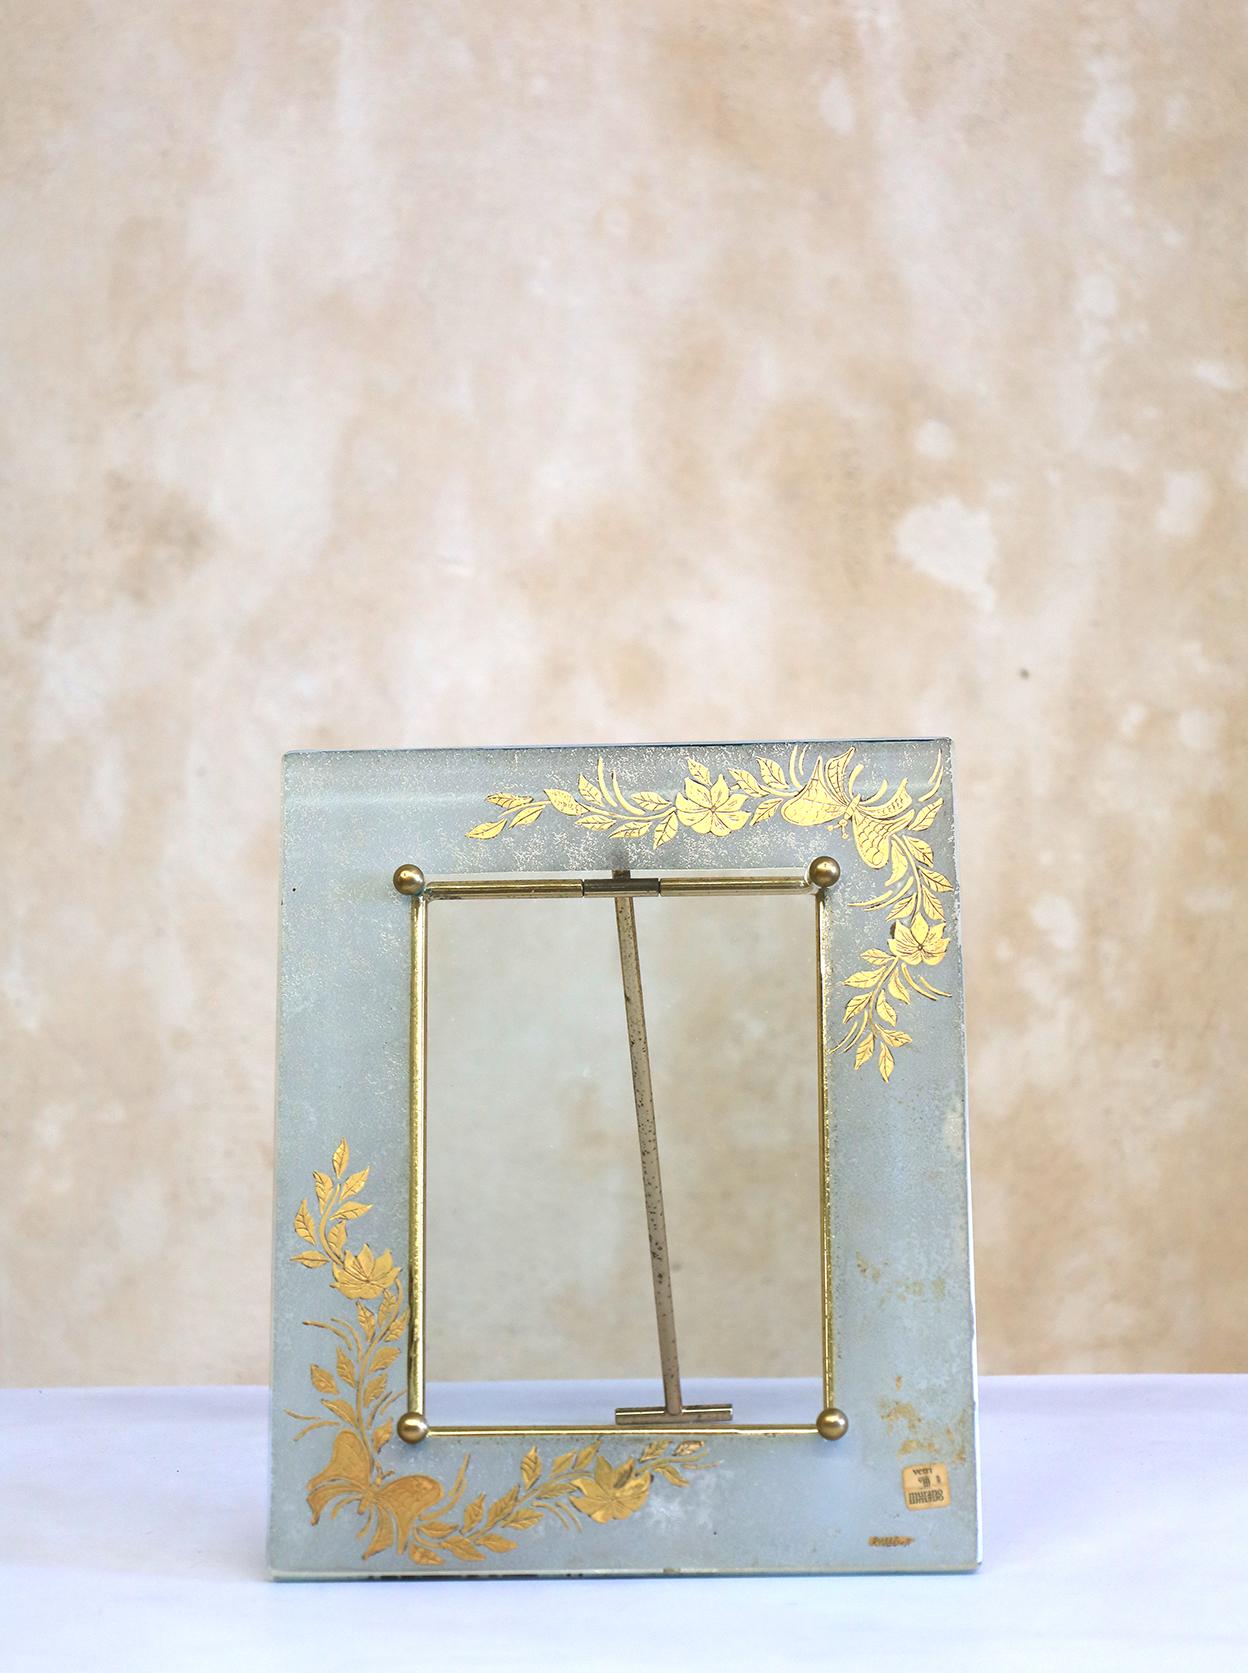 Très rare cadre photo en verre de Murano fabriqué par Burbe. Tous les originaux sont signés avec le cachet de Vetri.
Les couleurs chaudes et agréables s'intègrent facilement à tous les types de décors.